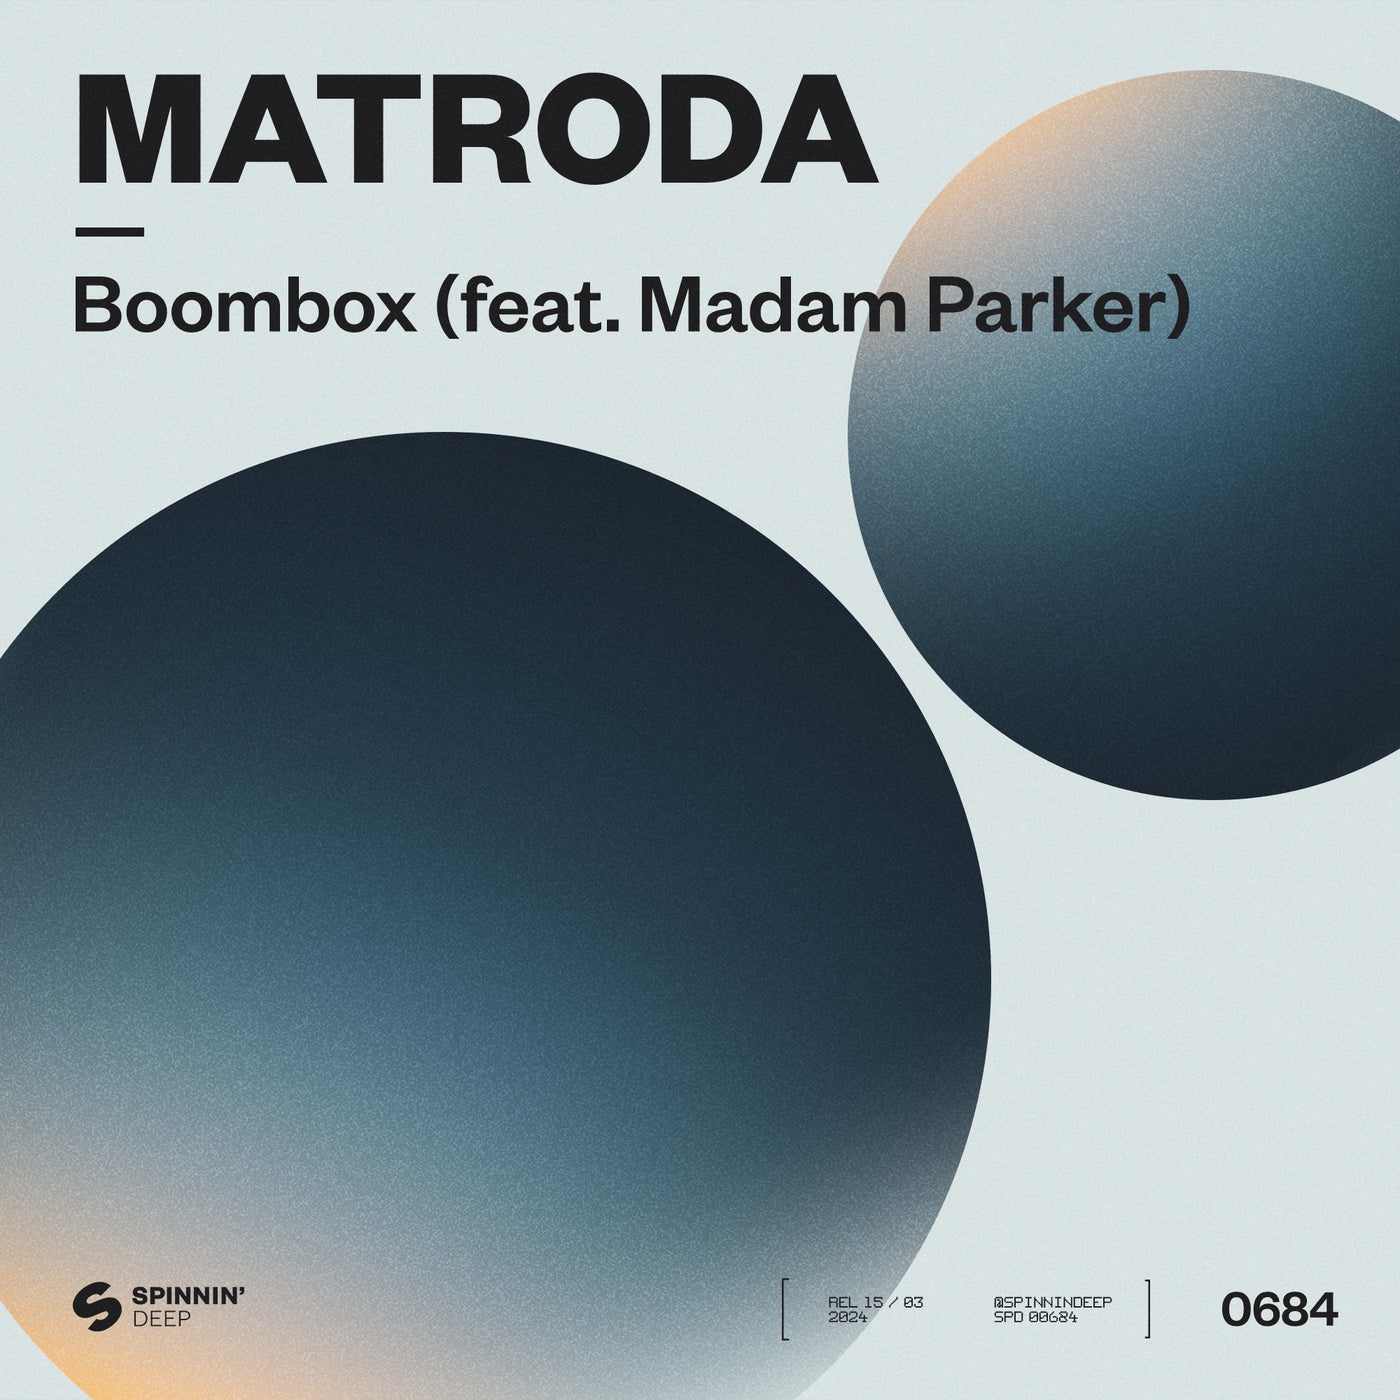 image cover: Matroda, Madam Parker - Boombox (feat. Madam Parker) [Extended Mix] on SPINNIN' DEEP